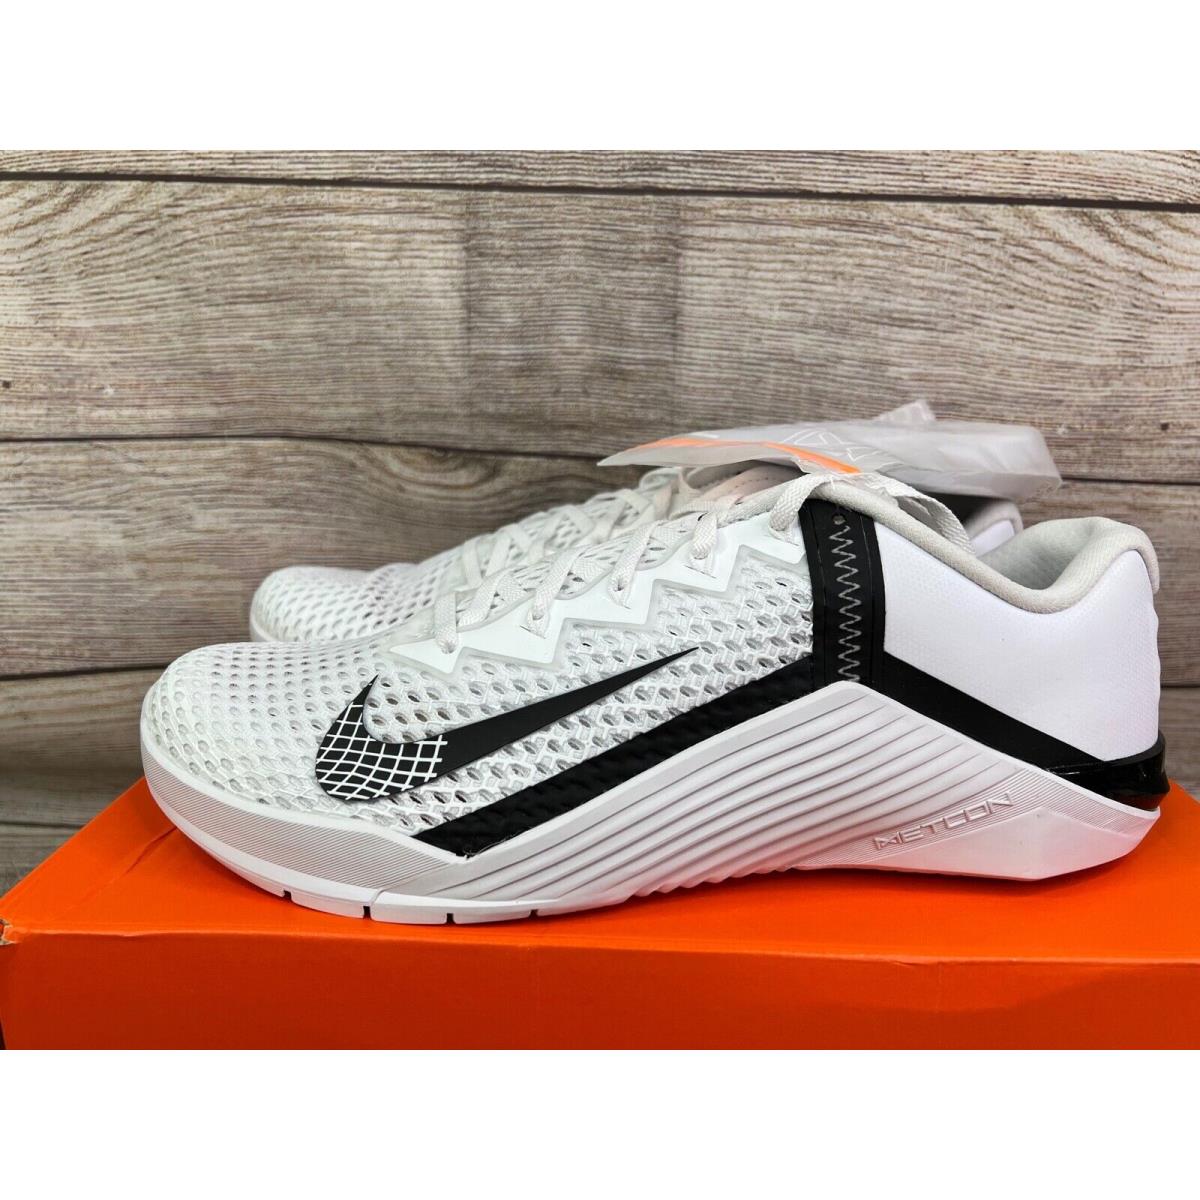 Nike shoes Metcon - White / Black 3